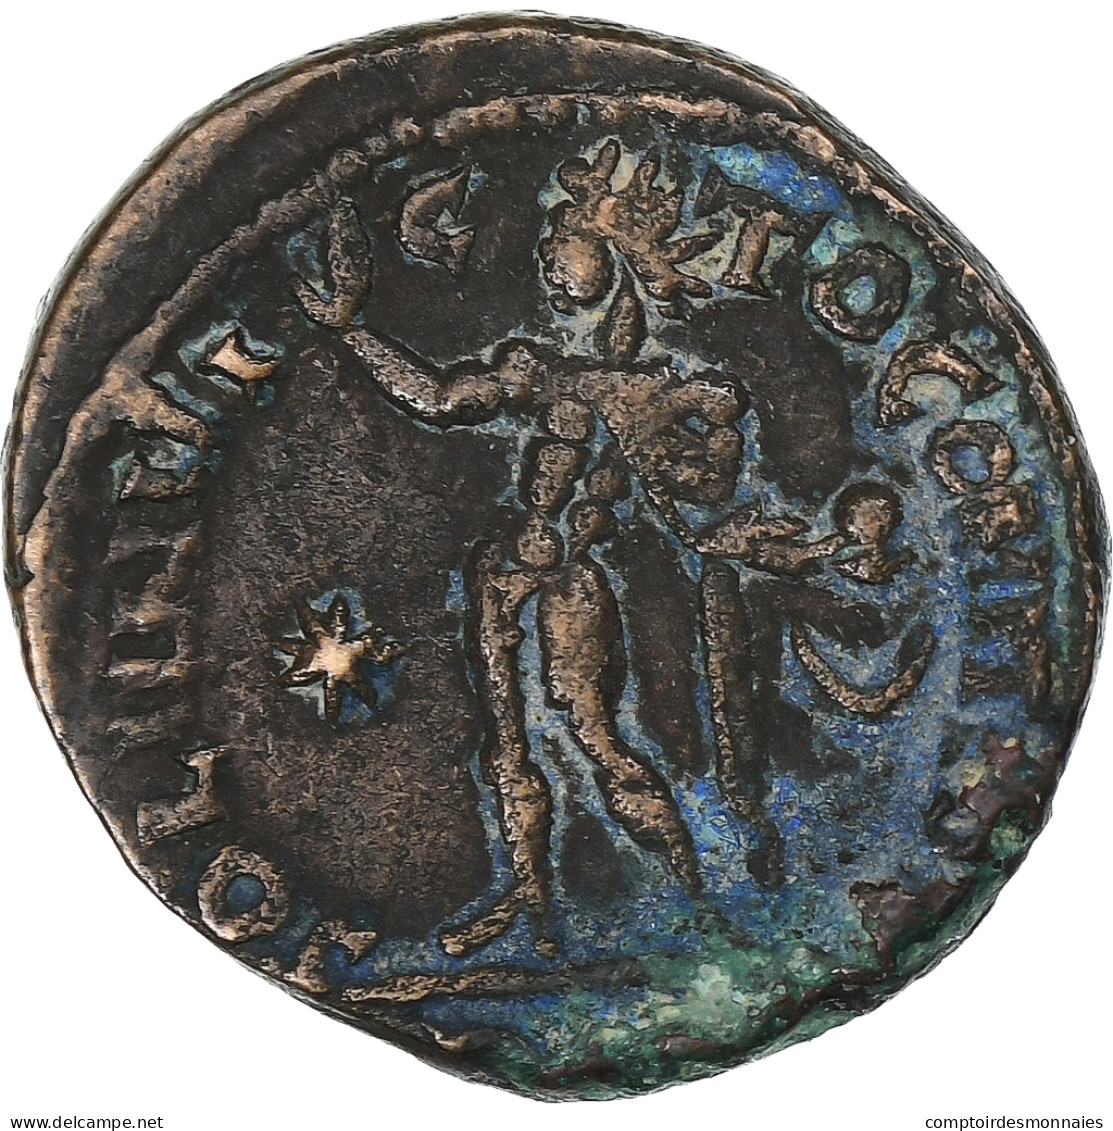 Constantin I, Follis, 307/310-337, Atelier Incertain, Cuivre, TB+ - L'Empire Chrétien (307 à 363)